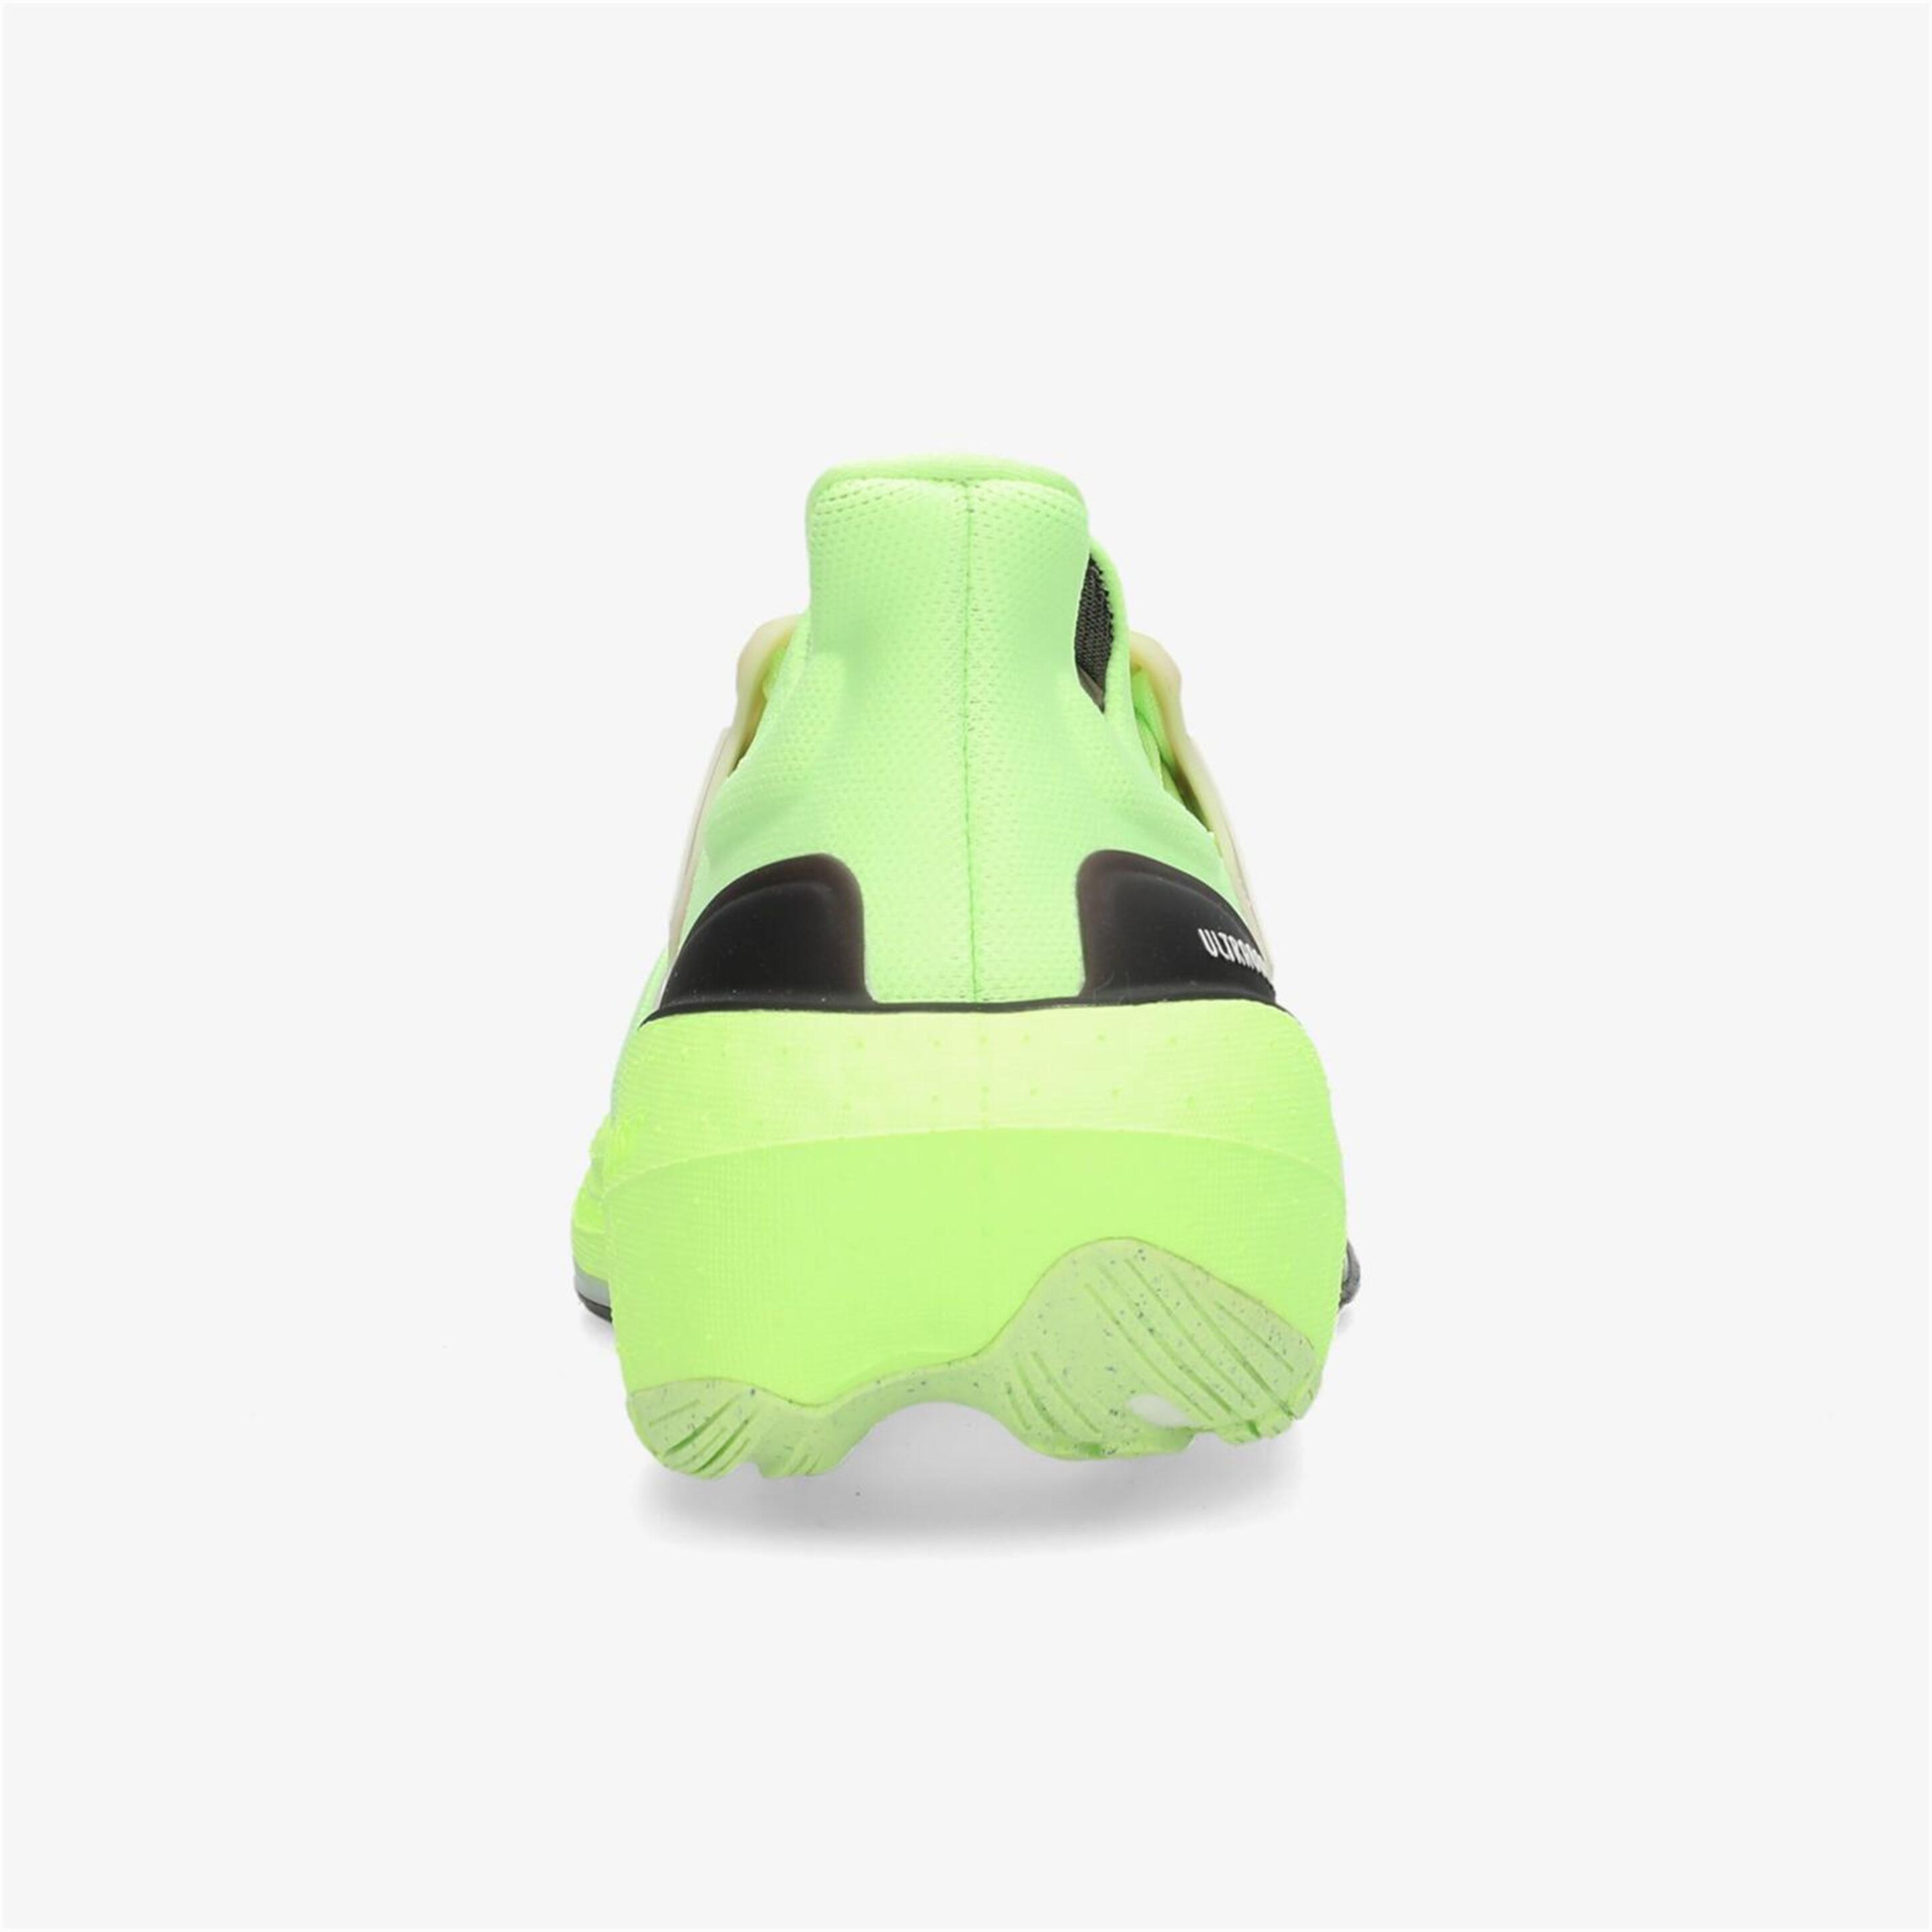 adidas UlTRaboost Light - Verde - Zapatillas Running Hombre | Sprinter